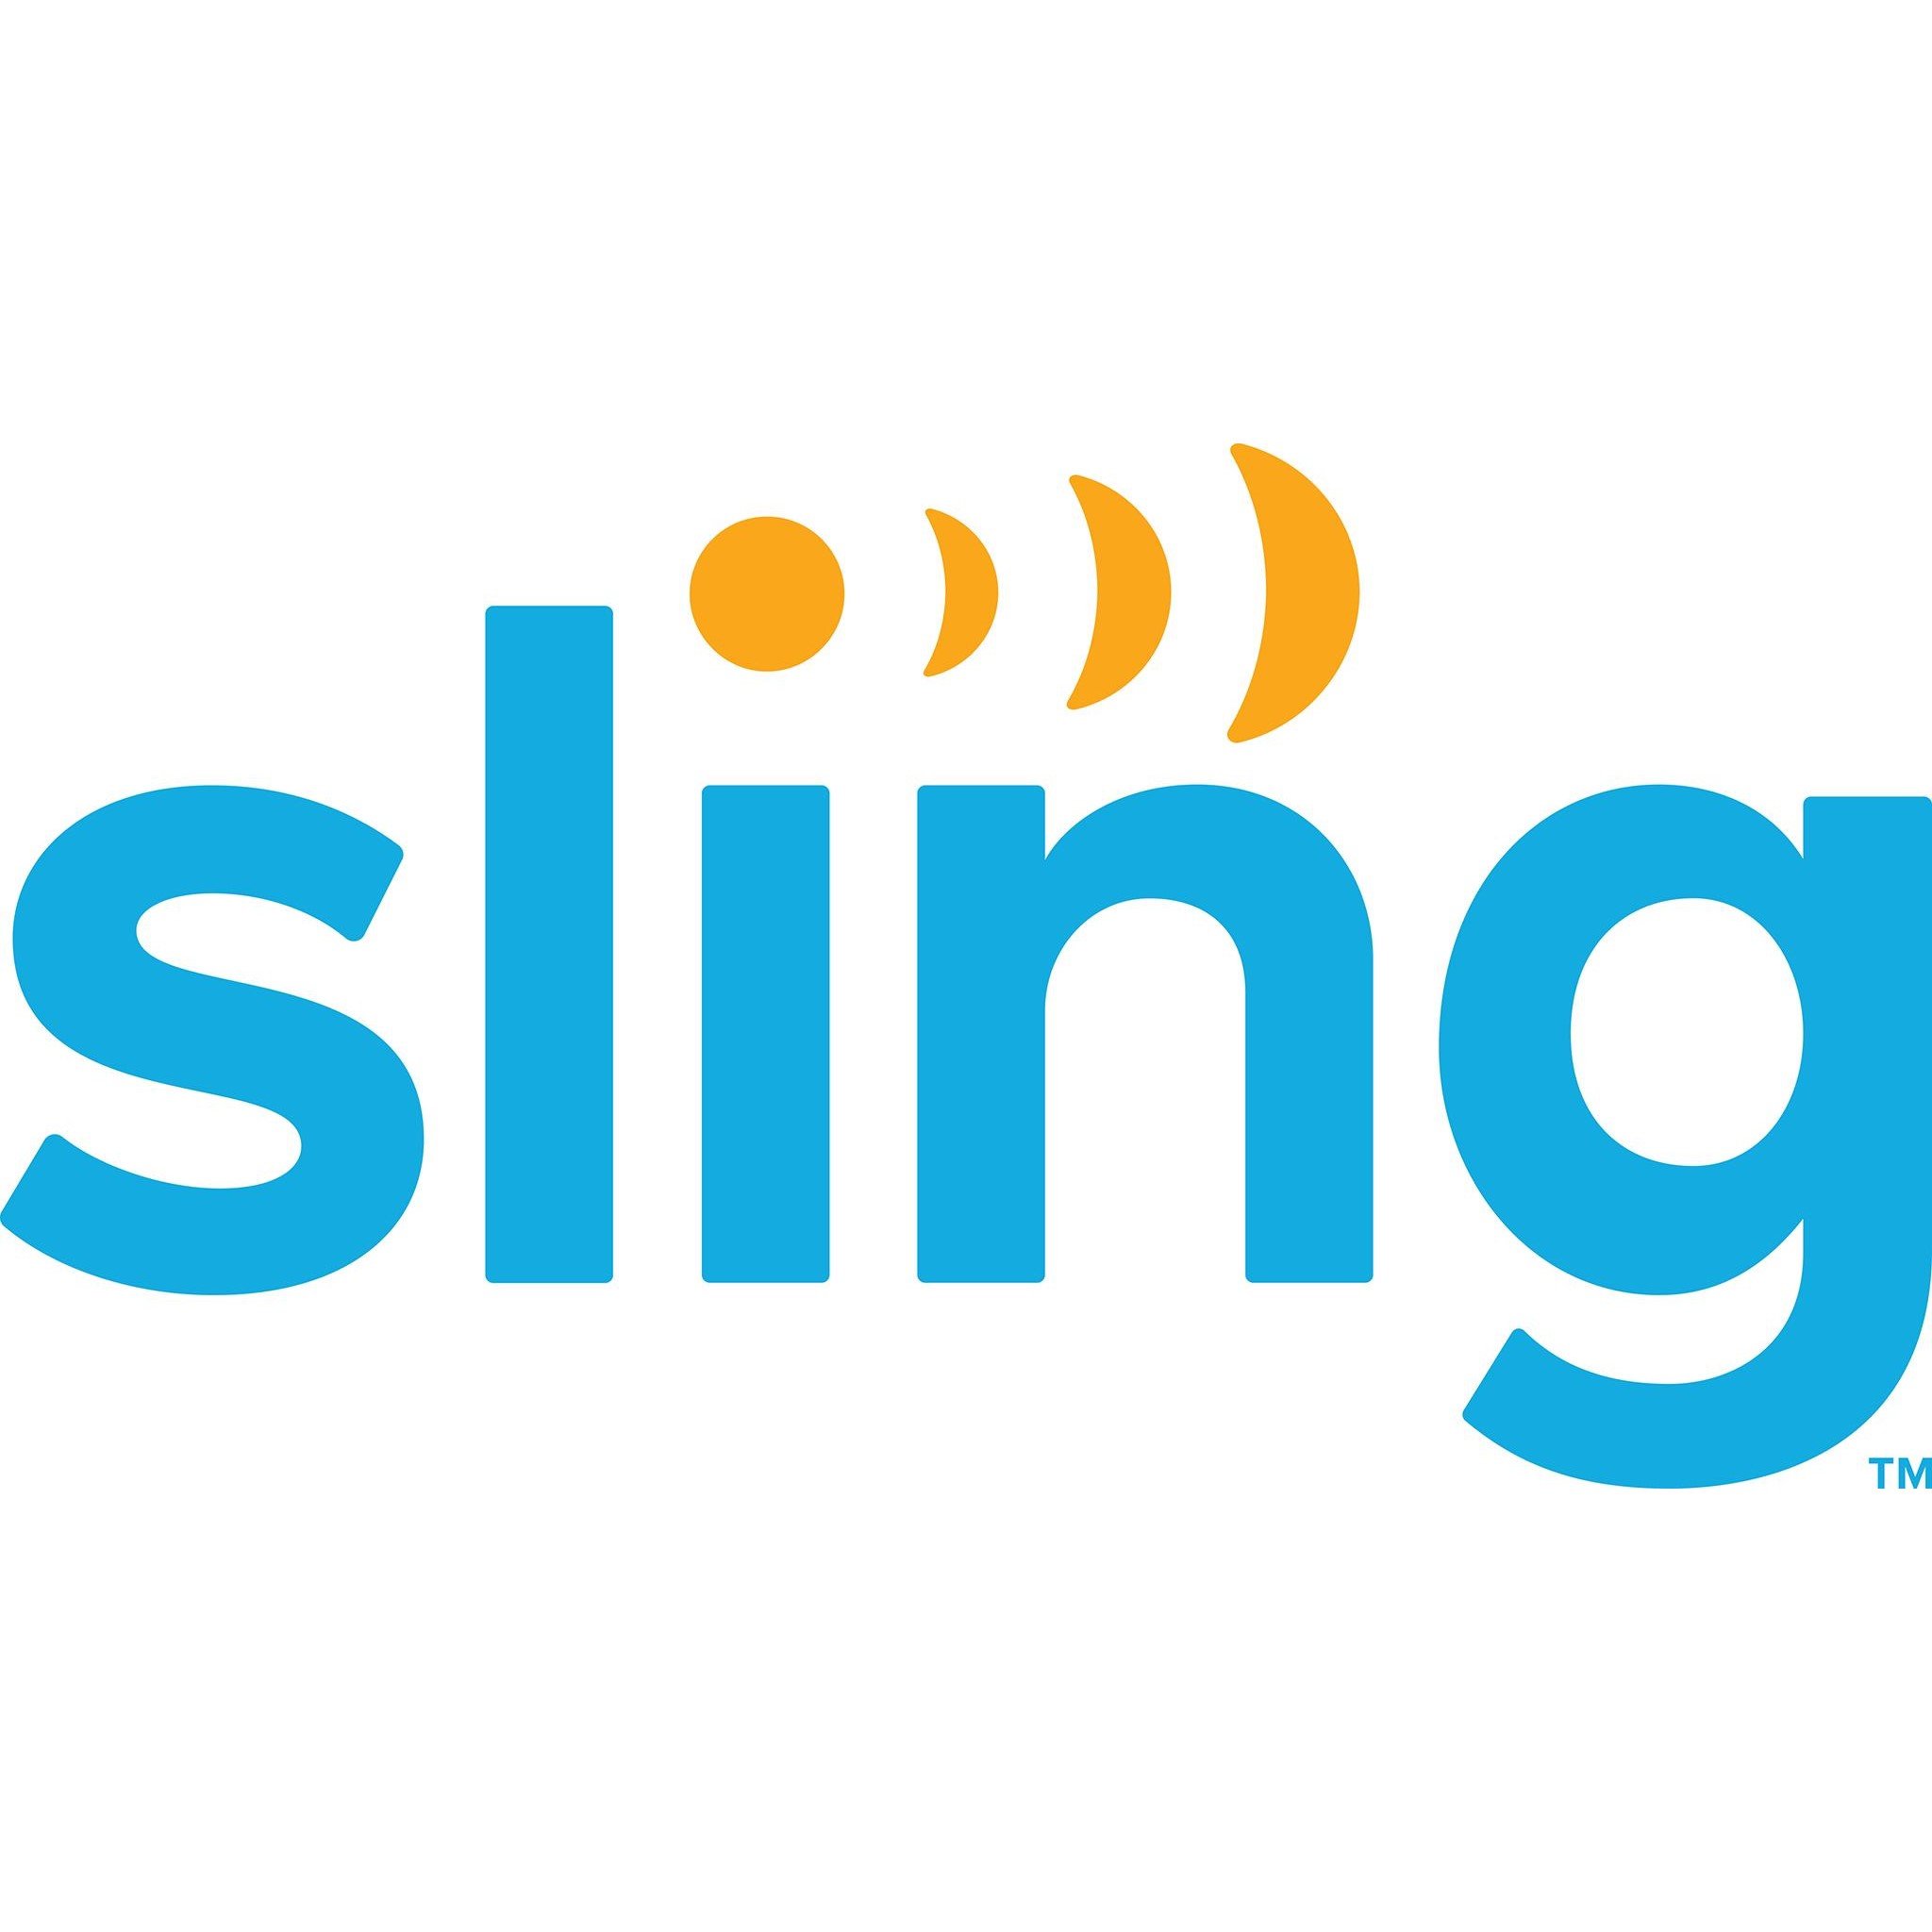 Sling Logo